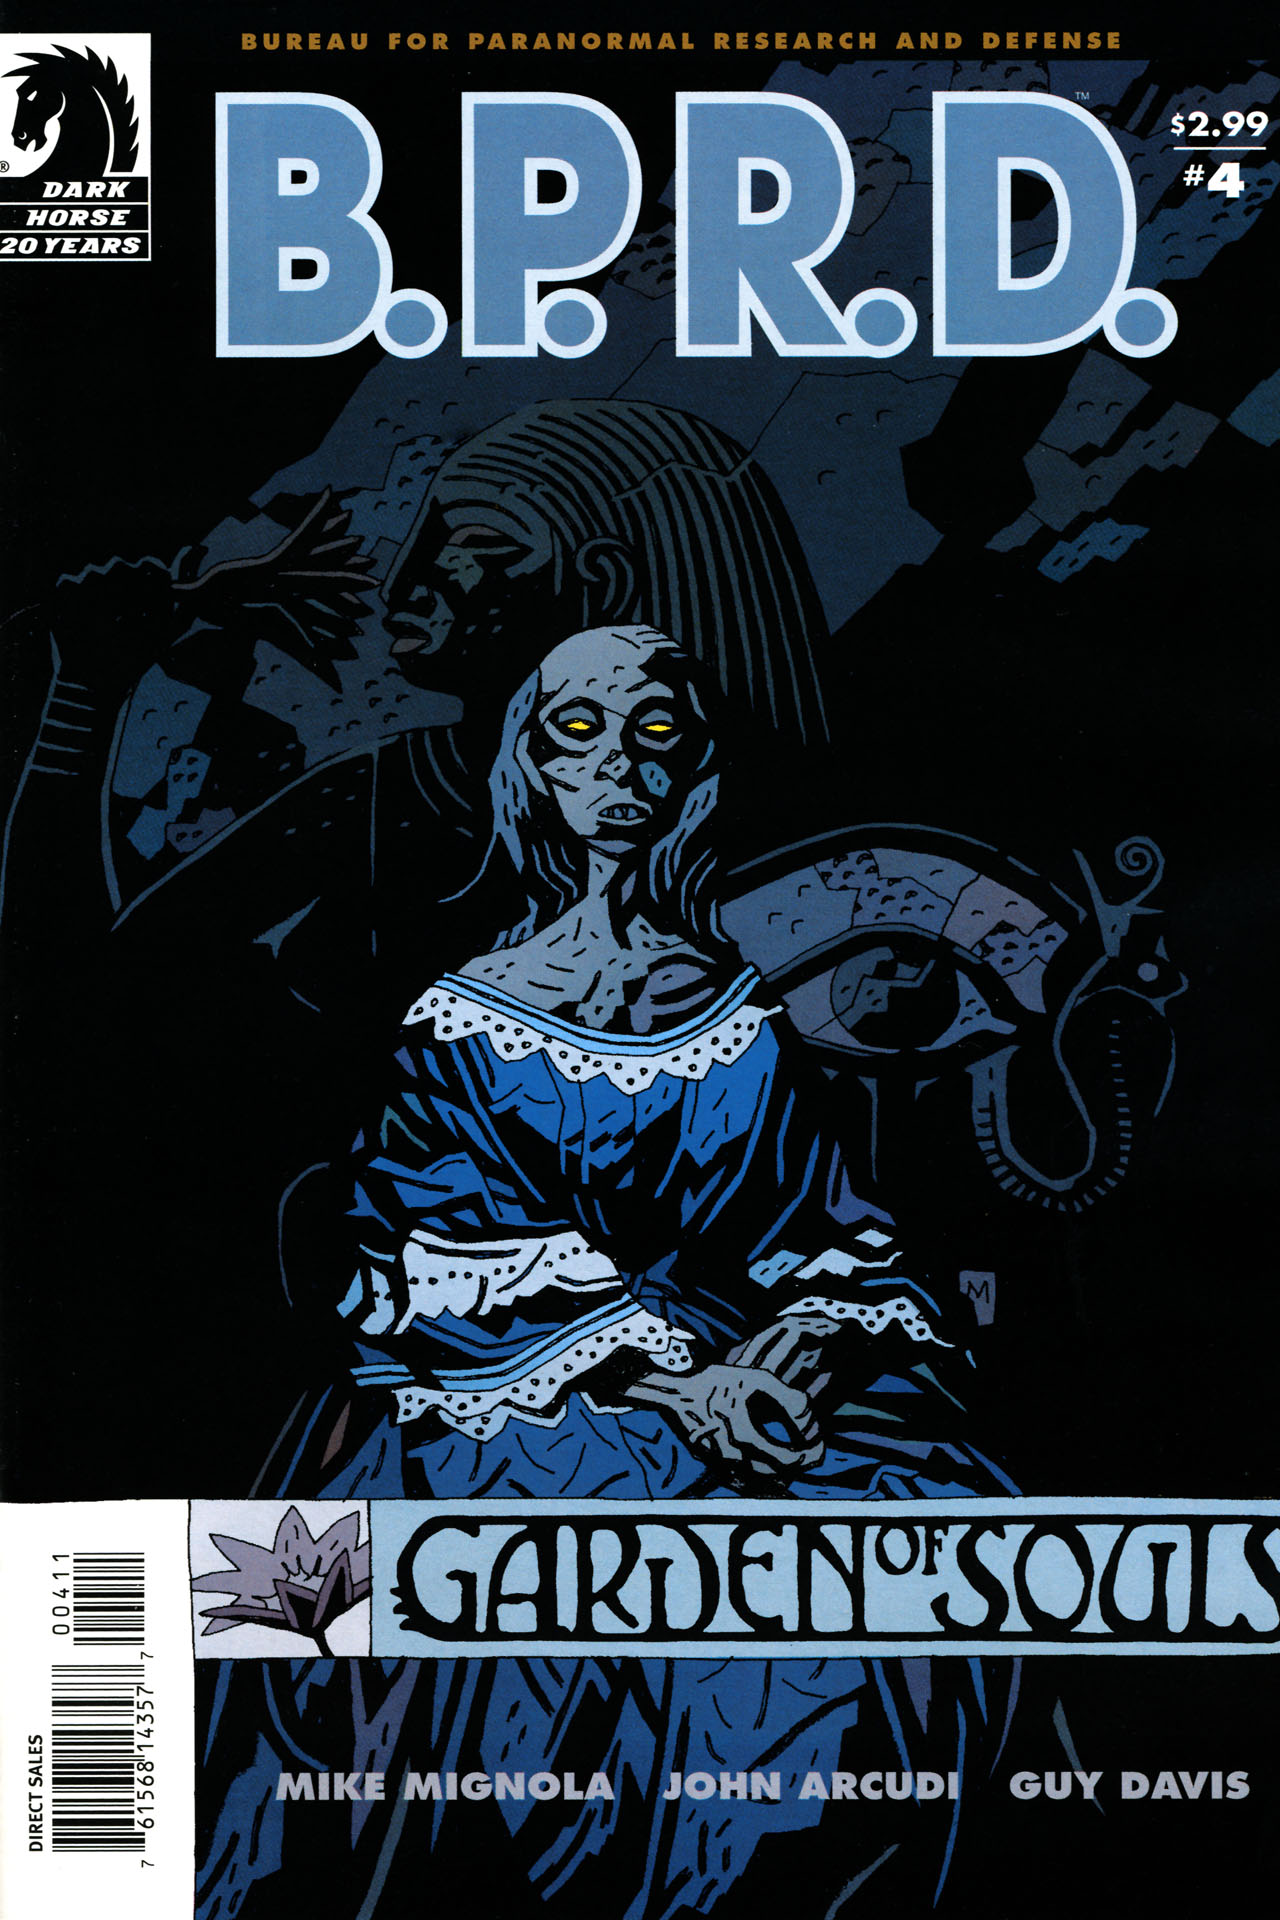 B.P.R.D.: Garden Of Souls Backgrounds, Compatible - PC, Mobile, Gadgets| 1280x1920 px